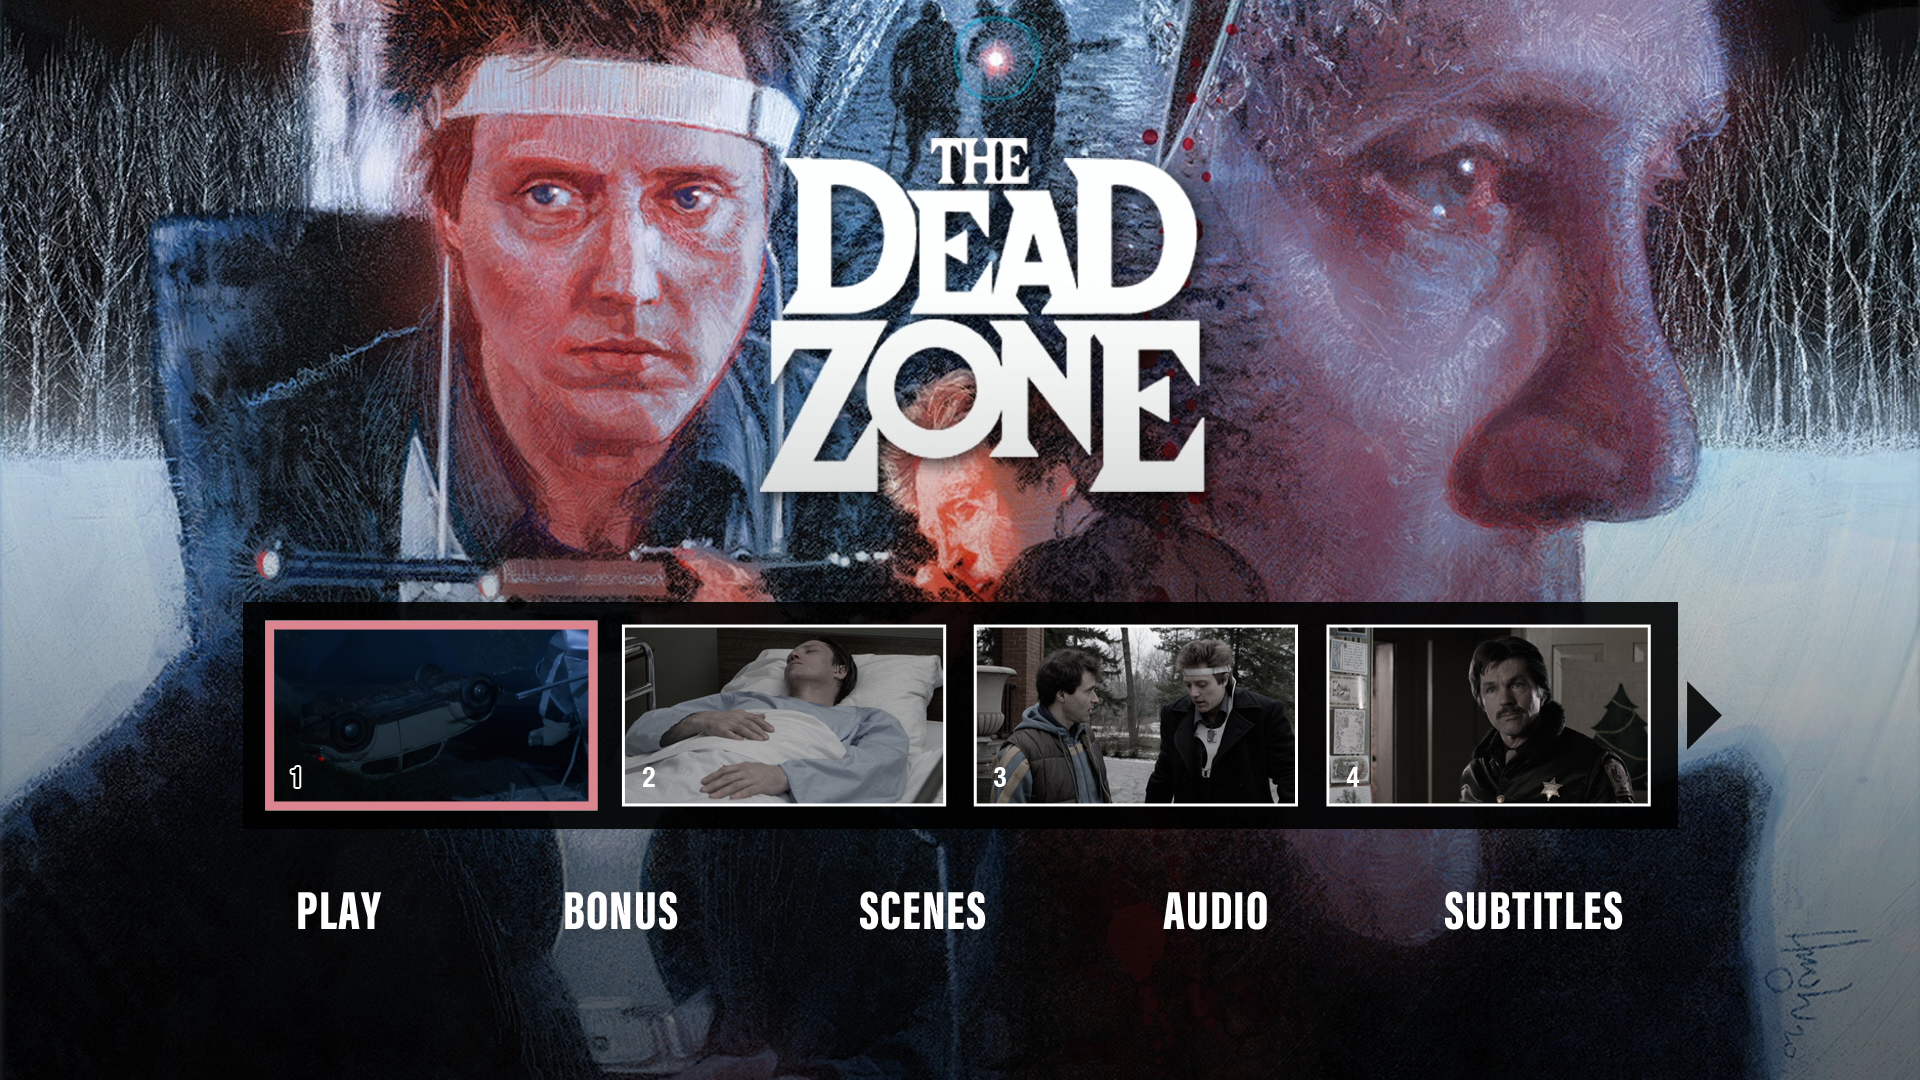 The Dead Zone scene select menu